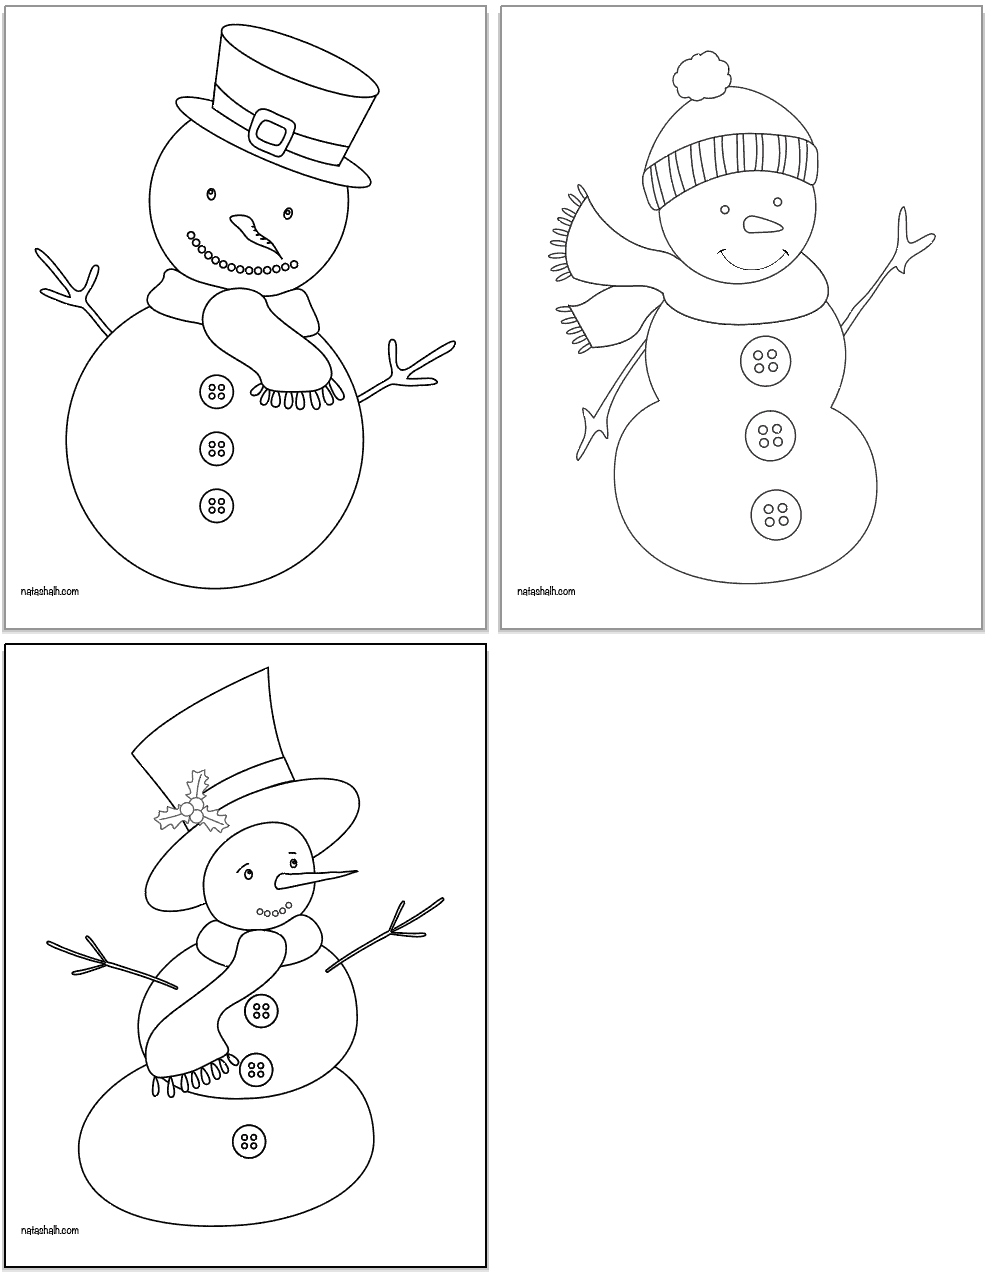 Free Printable Snowman Templates - The Artisan Life